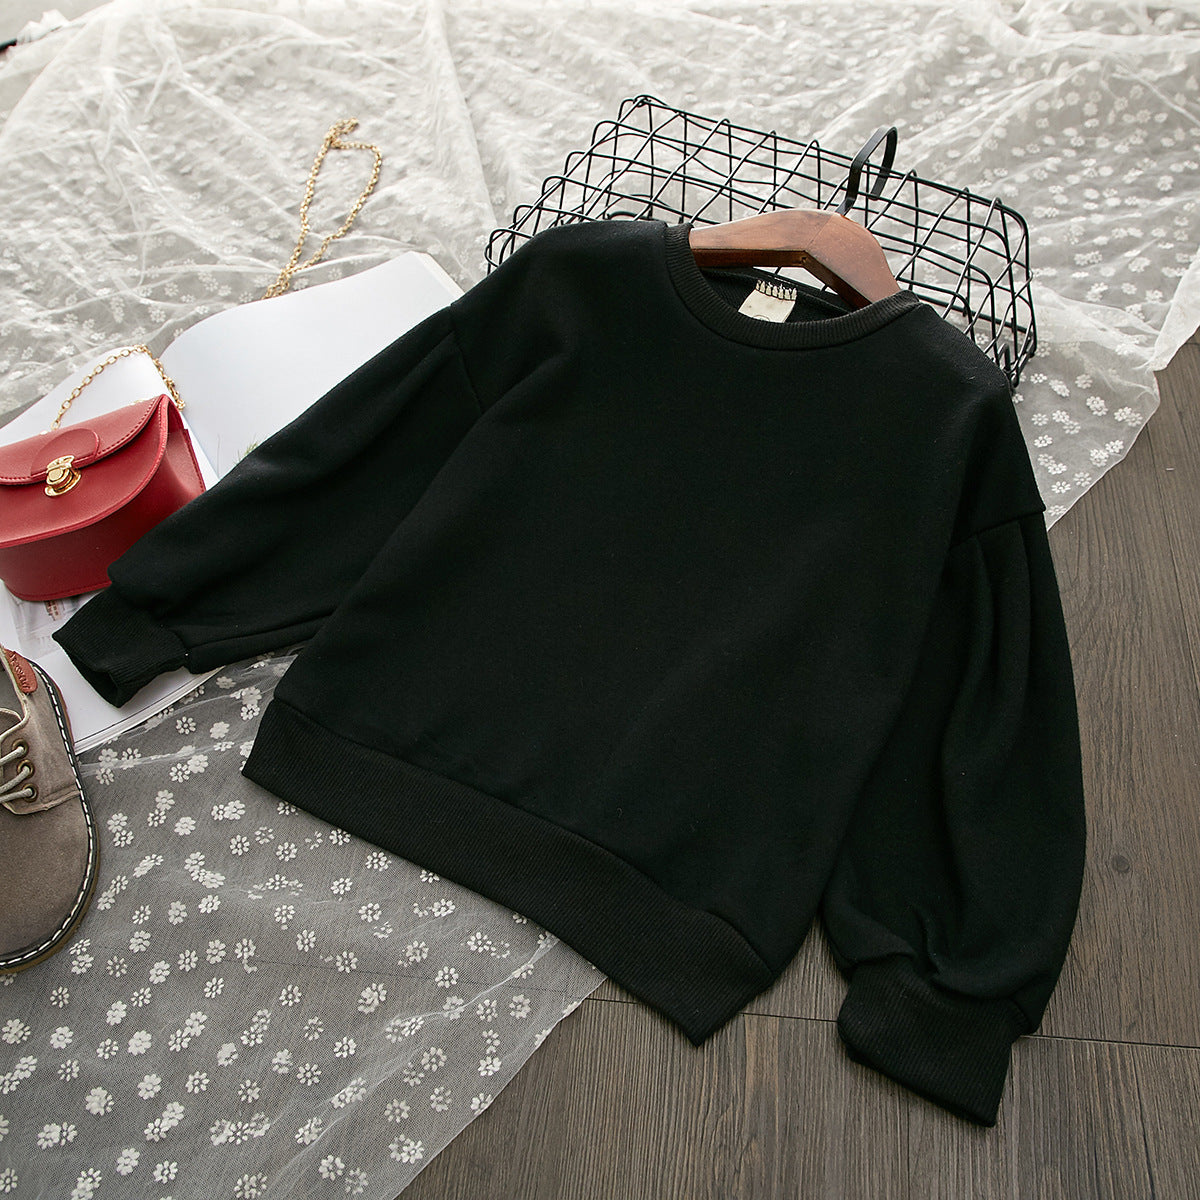 Duck Long Sleeve Sweater Leopard Print Denim Skirt Set